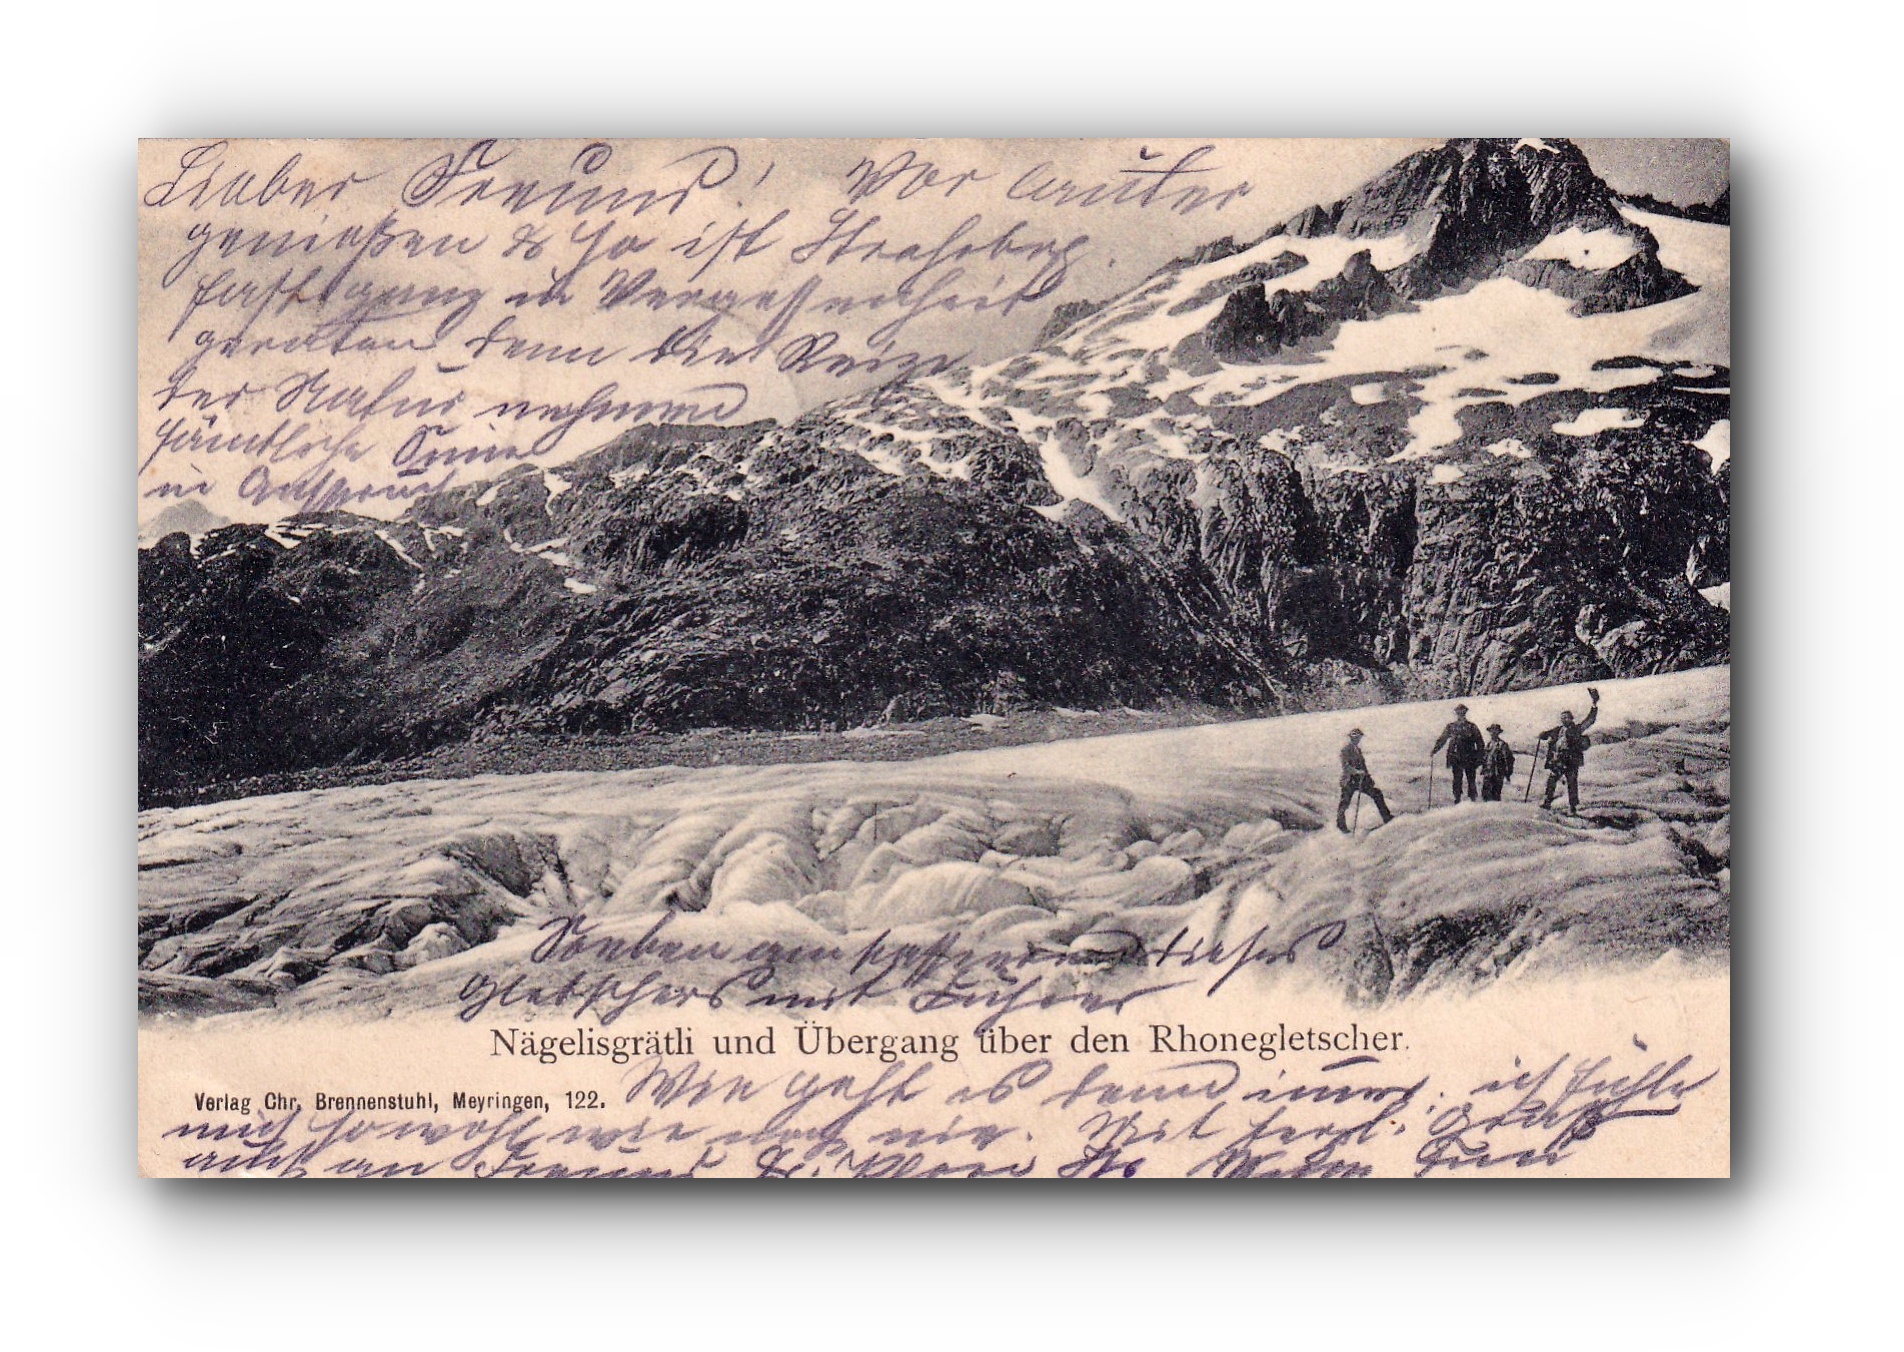 Näglisgrätli und Übergang über den Rhonegletscher - 03.08.1905 - Näglisgrätli et traversée du glacier du Rhône - Näglisgrätli and crossing over the Rhone Glacier